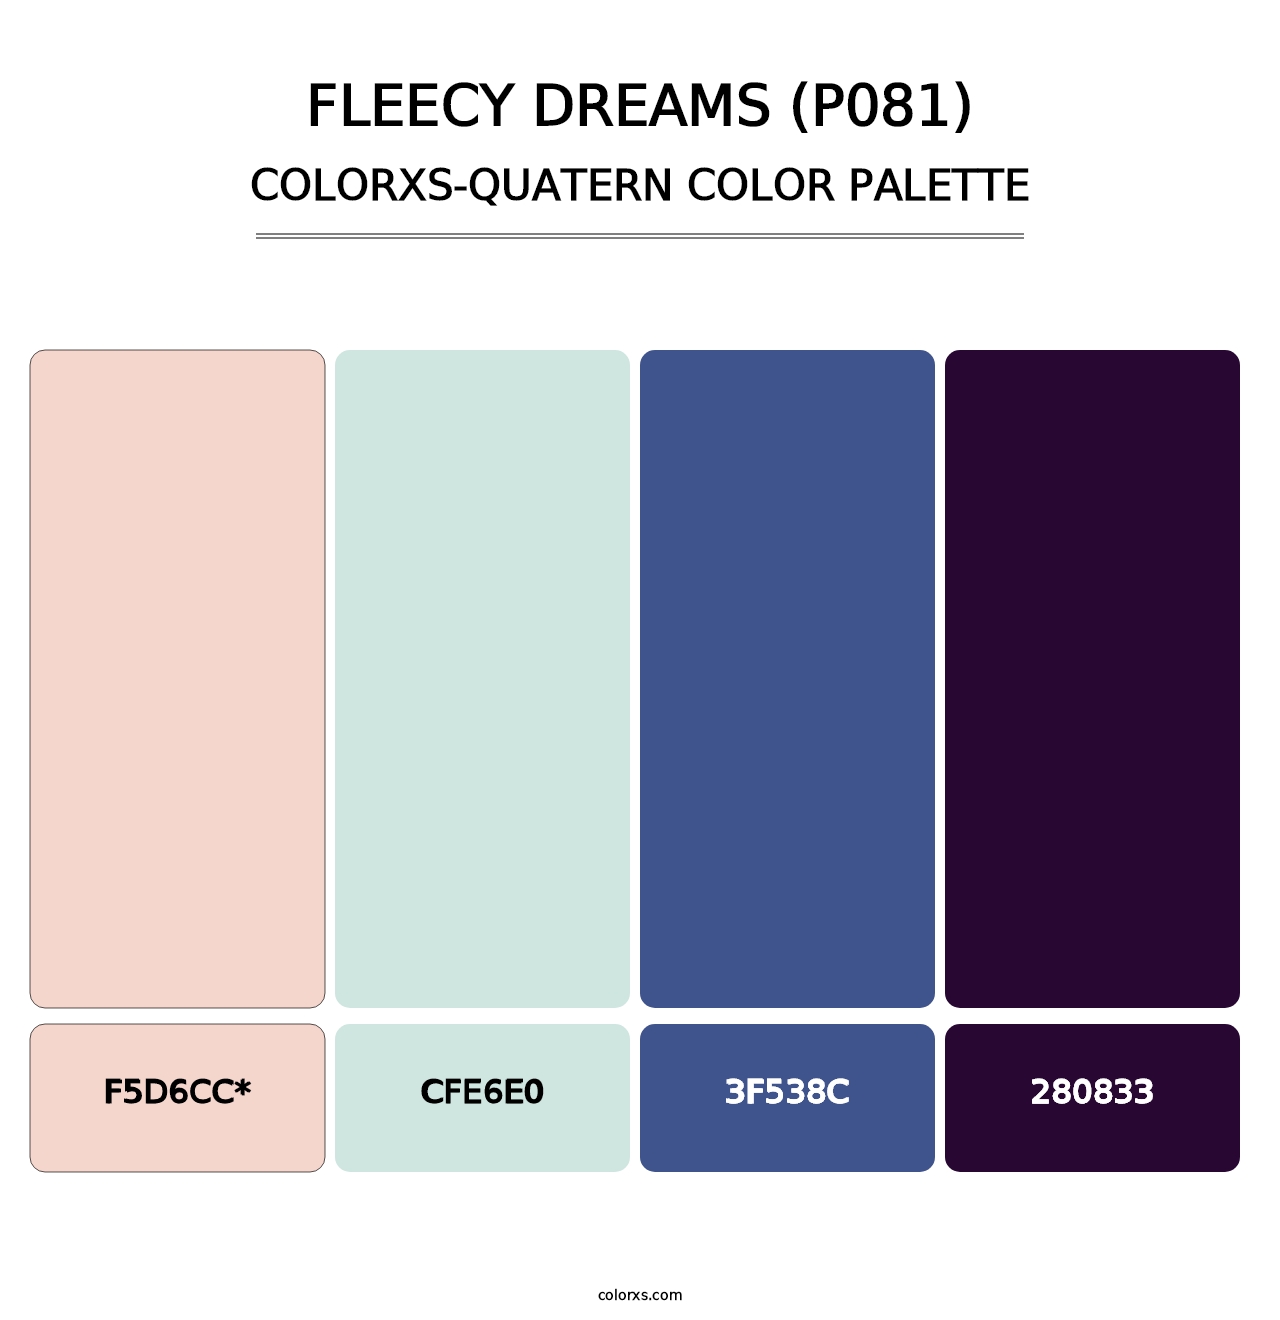 Fleecy Dreams (P081) - Colorxs Quatern Palette